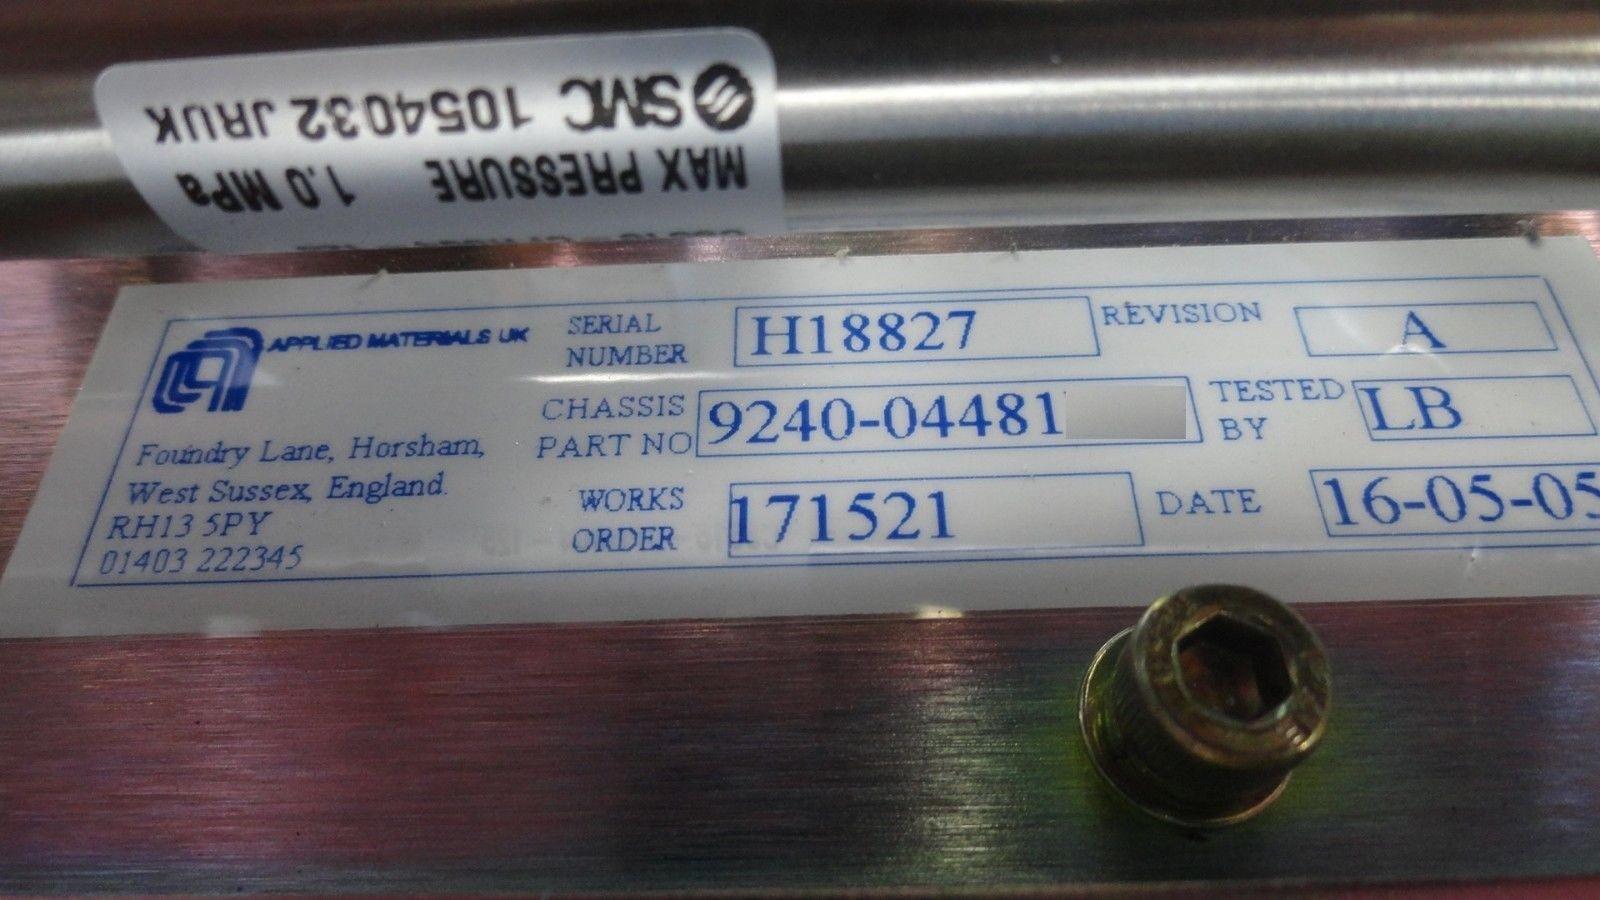 AMAT Applied Materials 9090-00442 Decel PSU Resistor 9010-01409 Quantum X Used